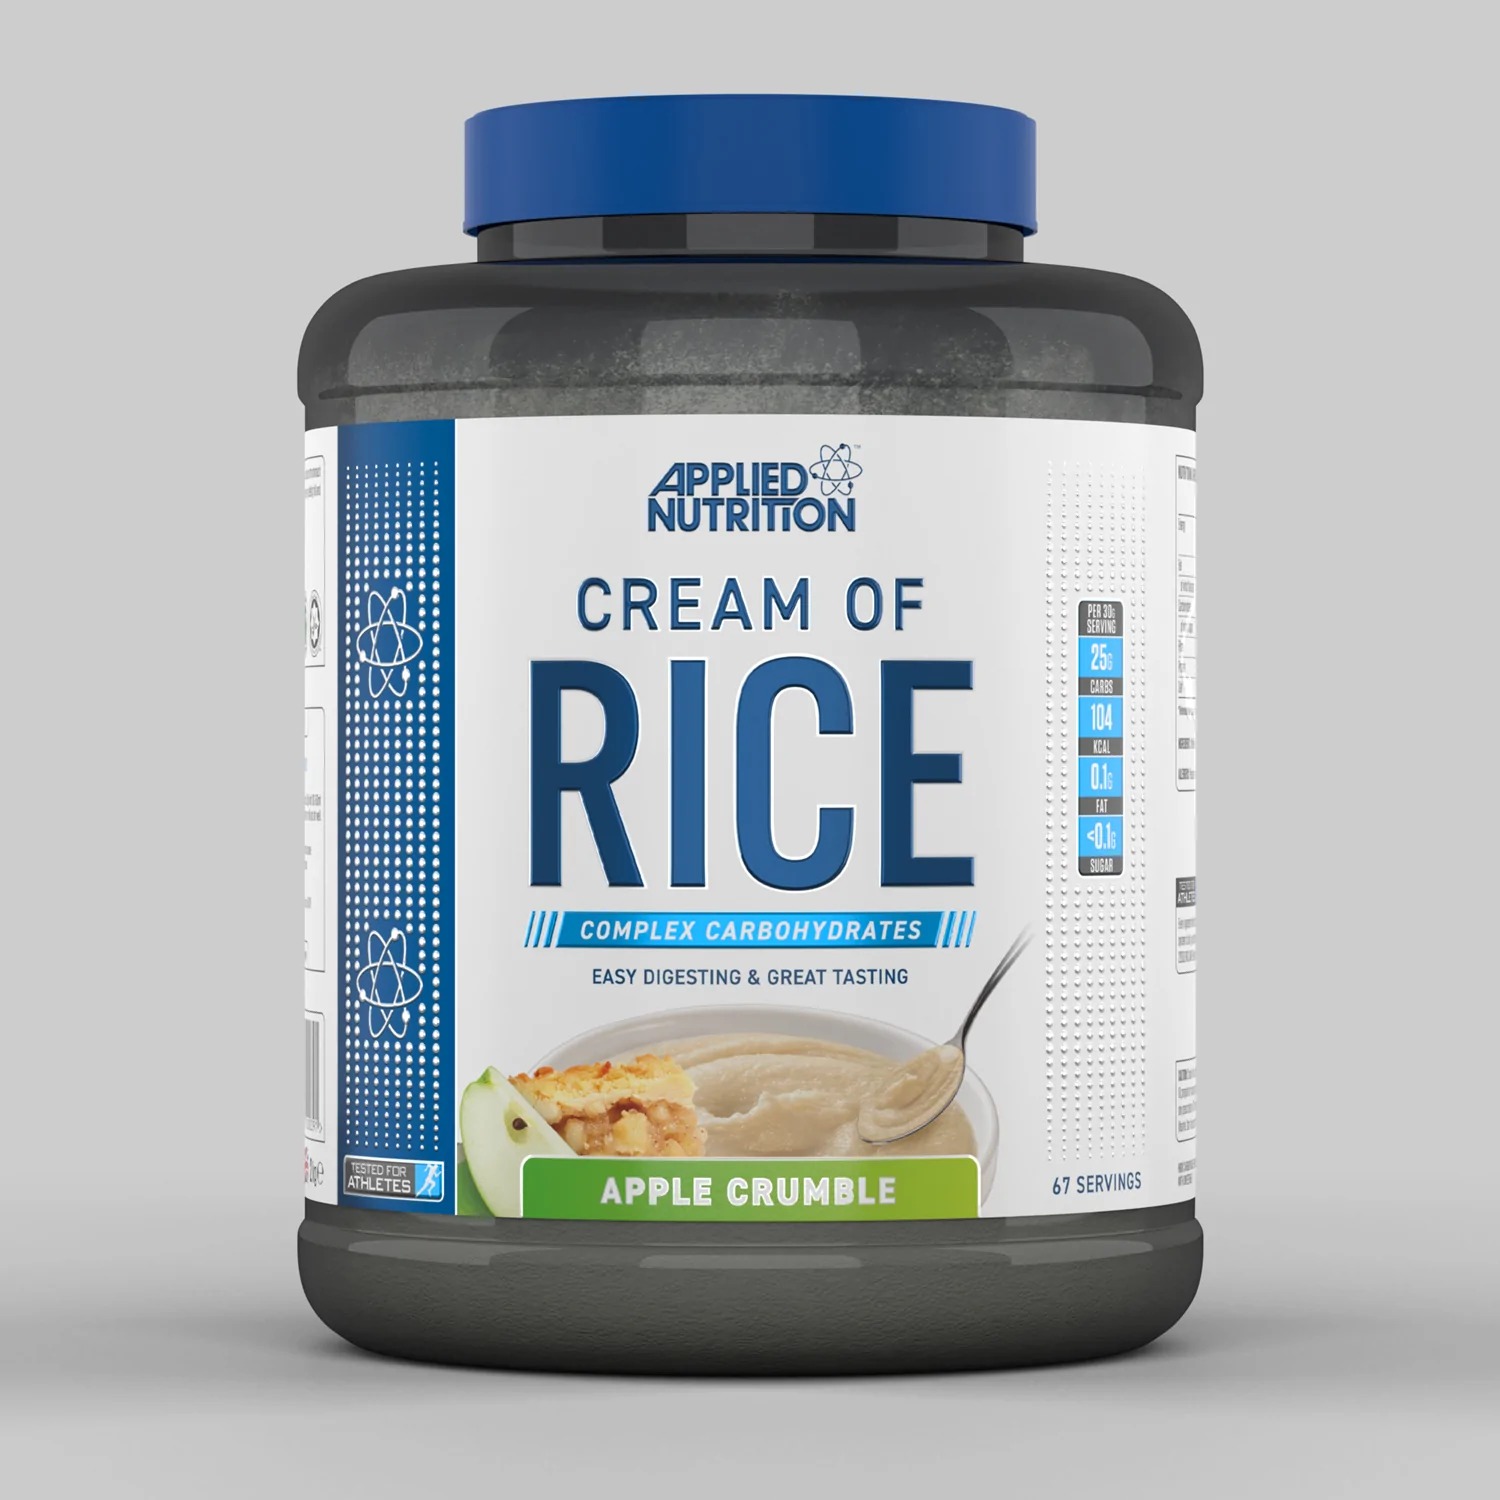 פחמימה איכותית CREAM OF RISE קרם אורז 67 מנות הגשה